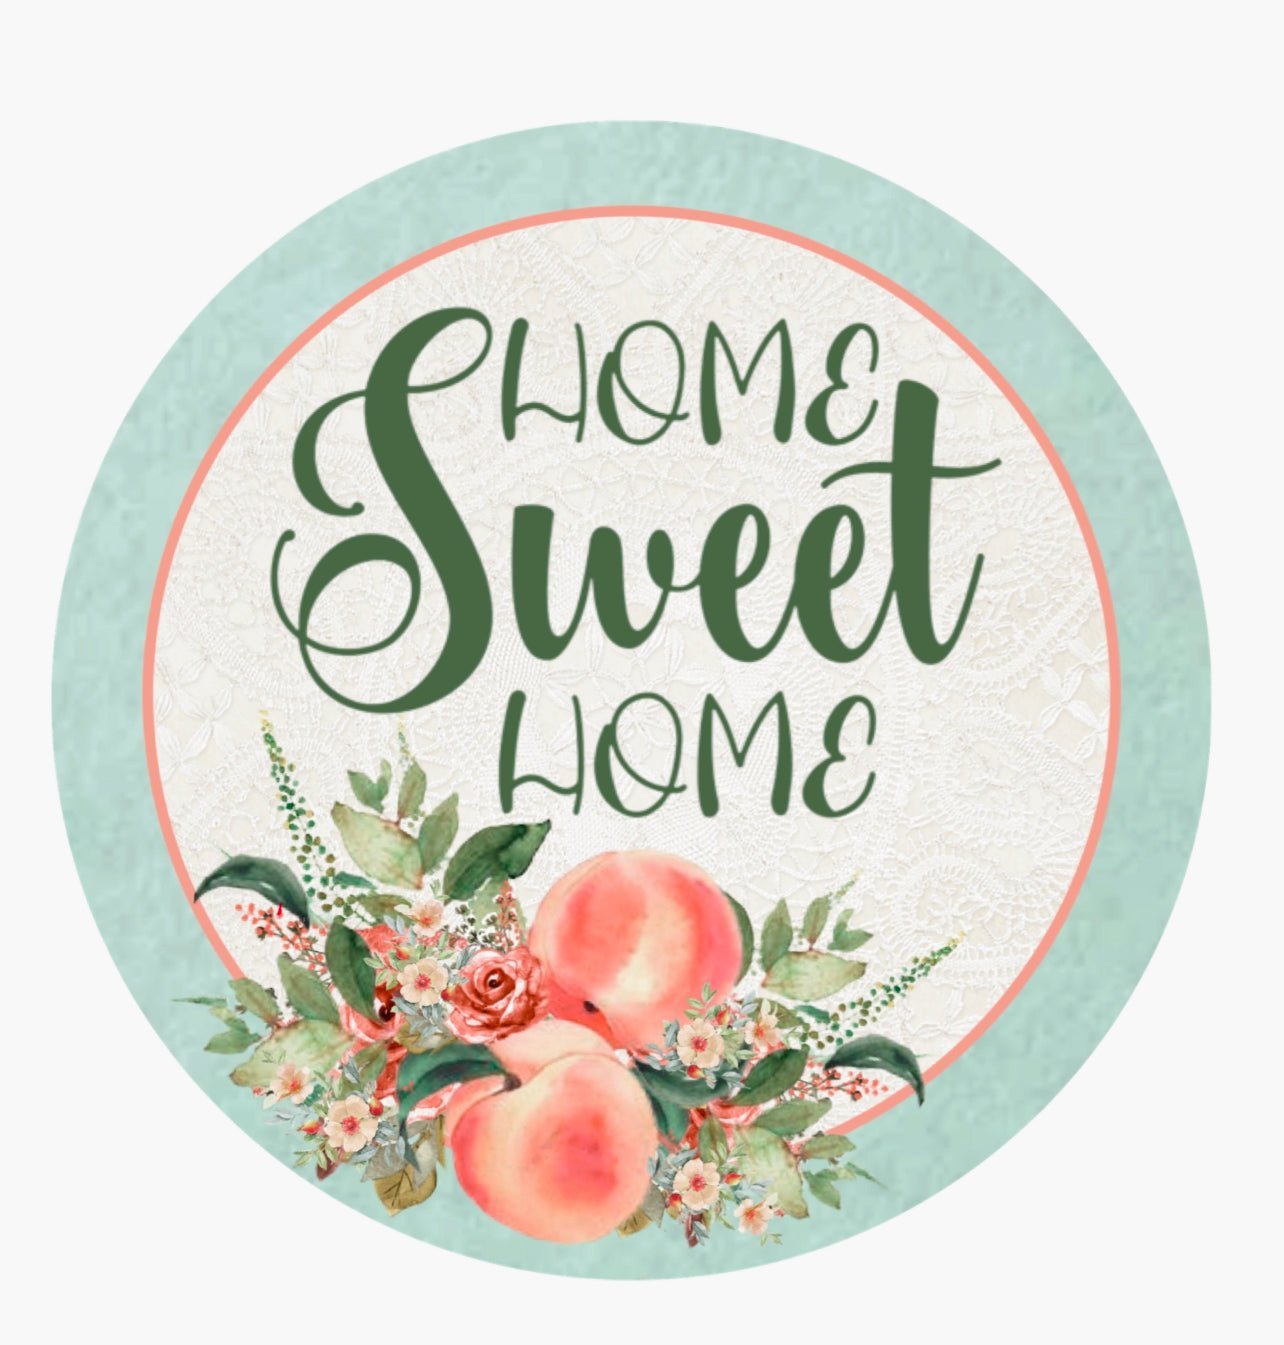 Peaches home sweet home 12” sign - Greenery MarketWreath signspeachhomesweetLARGE